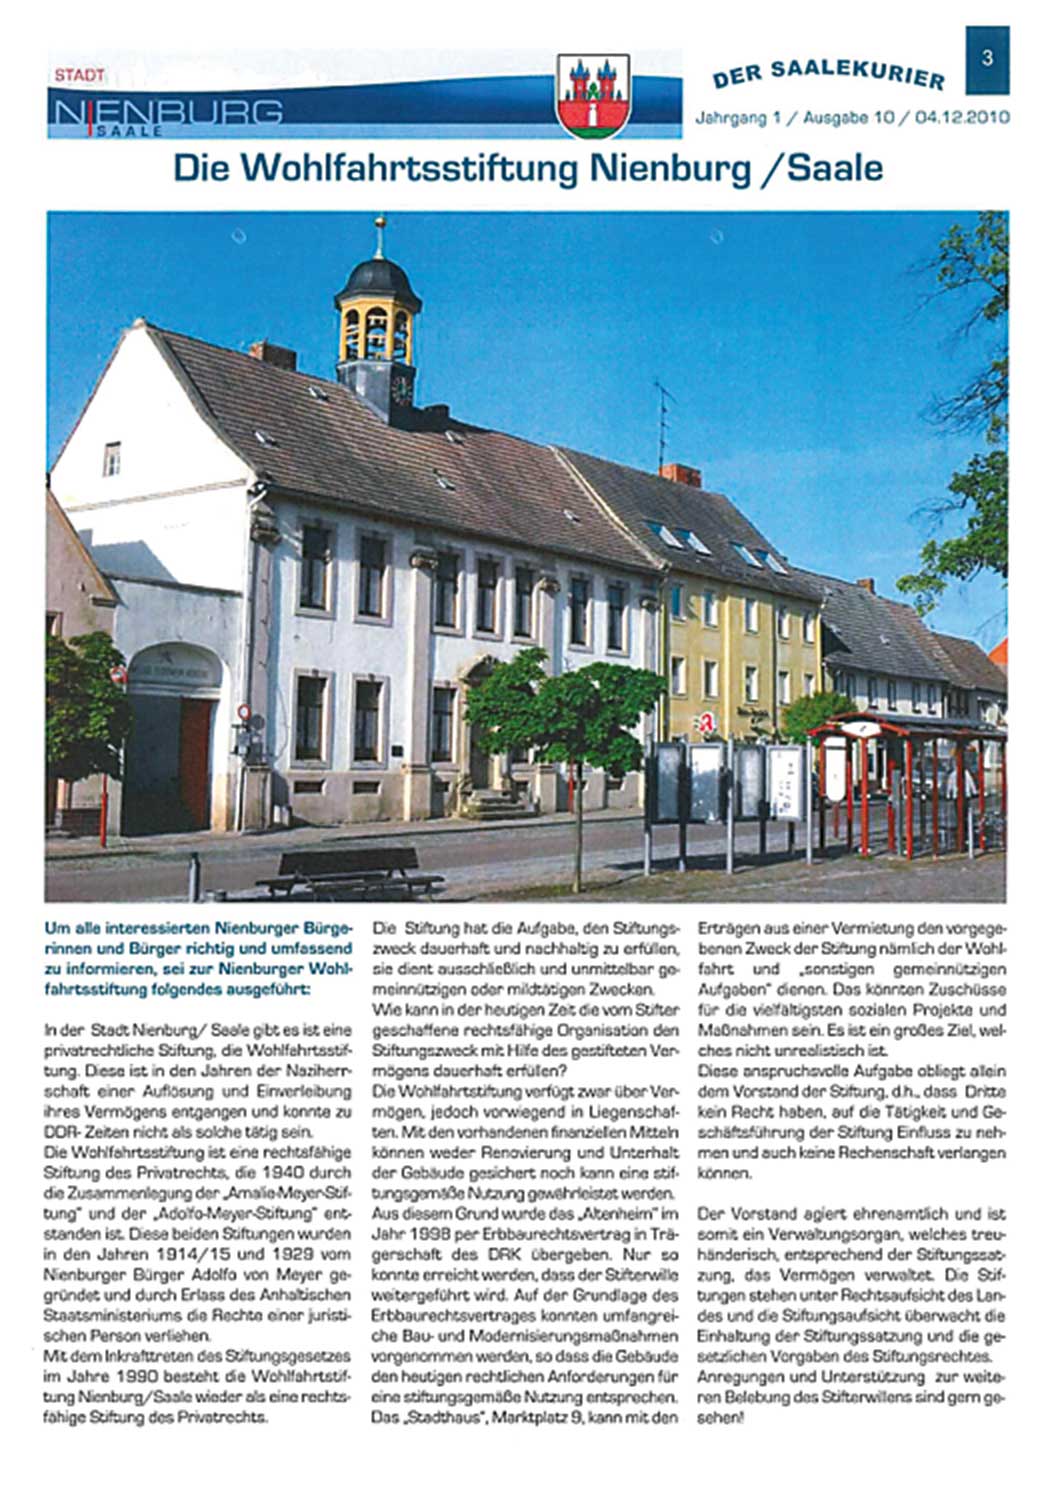 Vorstellung der Wohlfahrtsstiftung Nienburg (Der Saalekurier, H. 10/2010)